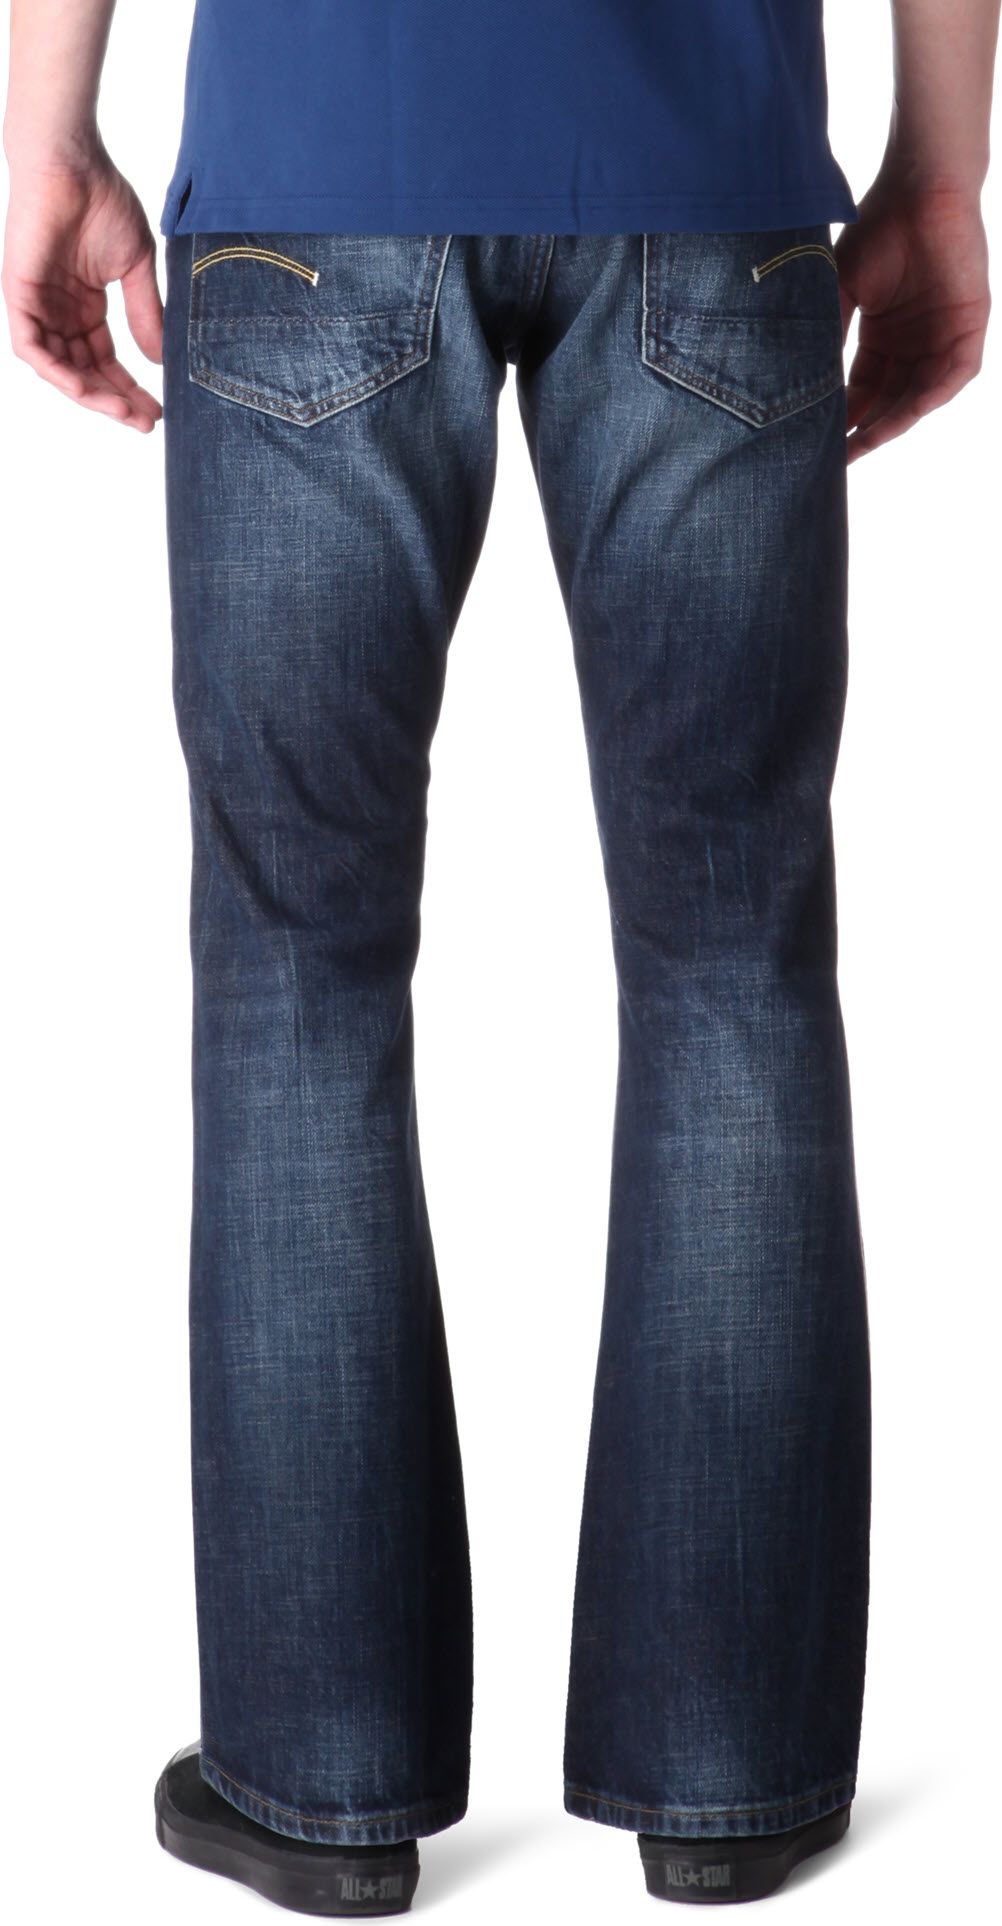 Herdenkings Speel Doorbraak g star 3301 bootcut mens jeans, Off 68%, www.iusarecords.com